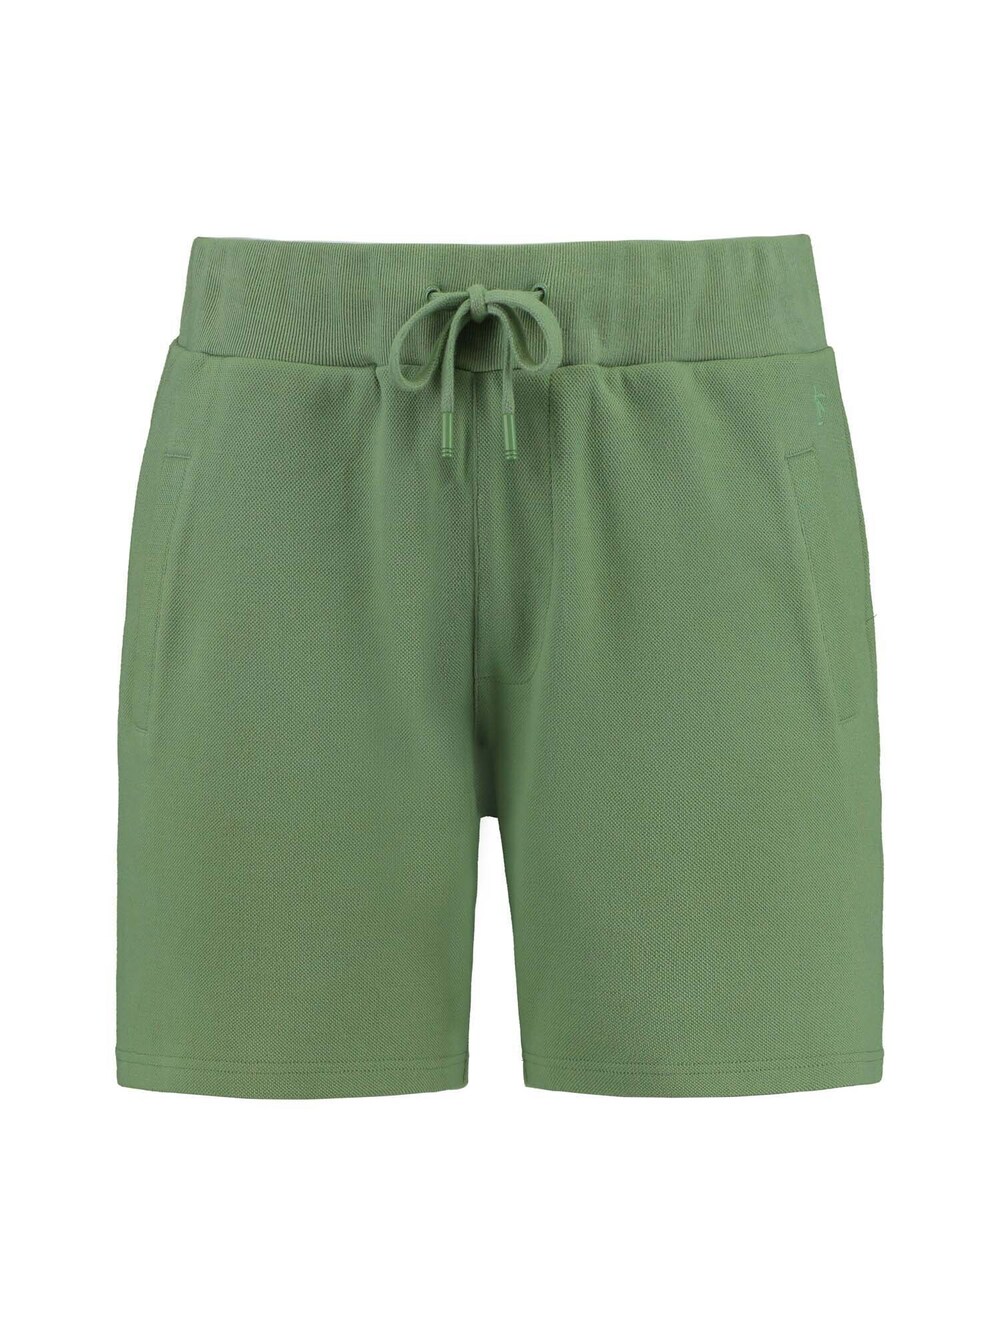 Обычные брюки Shiwi Mavis, трава зеленая зеленая трава